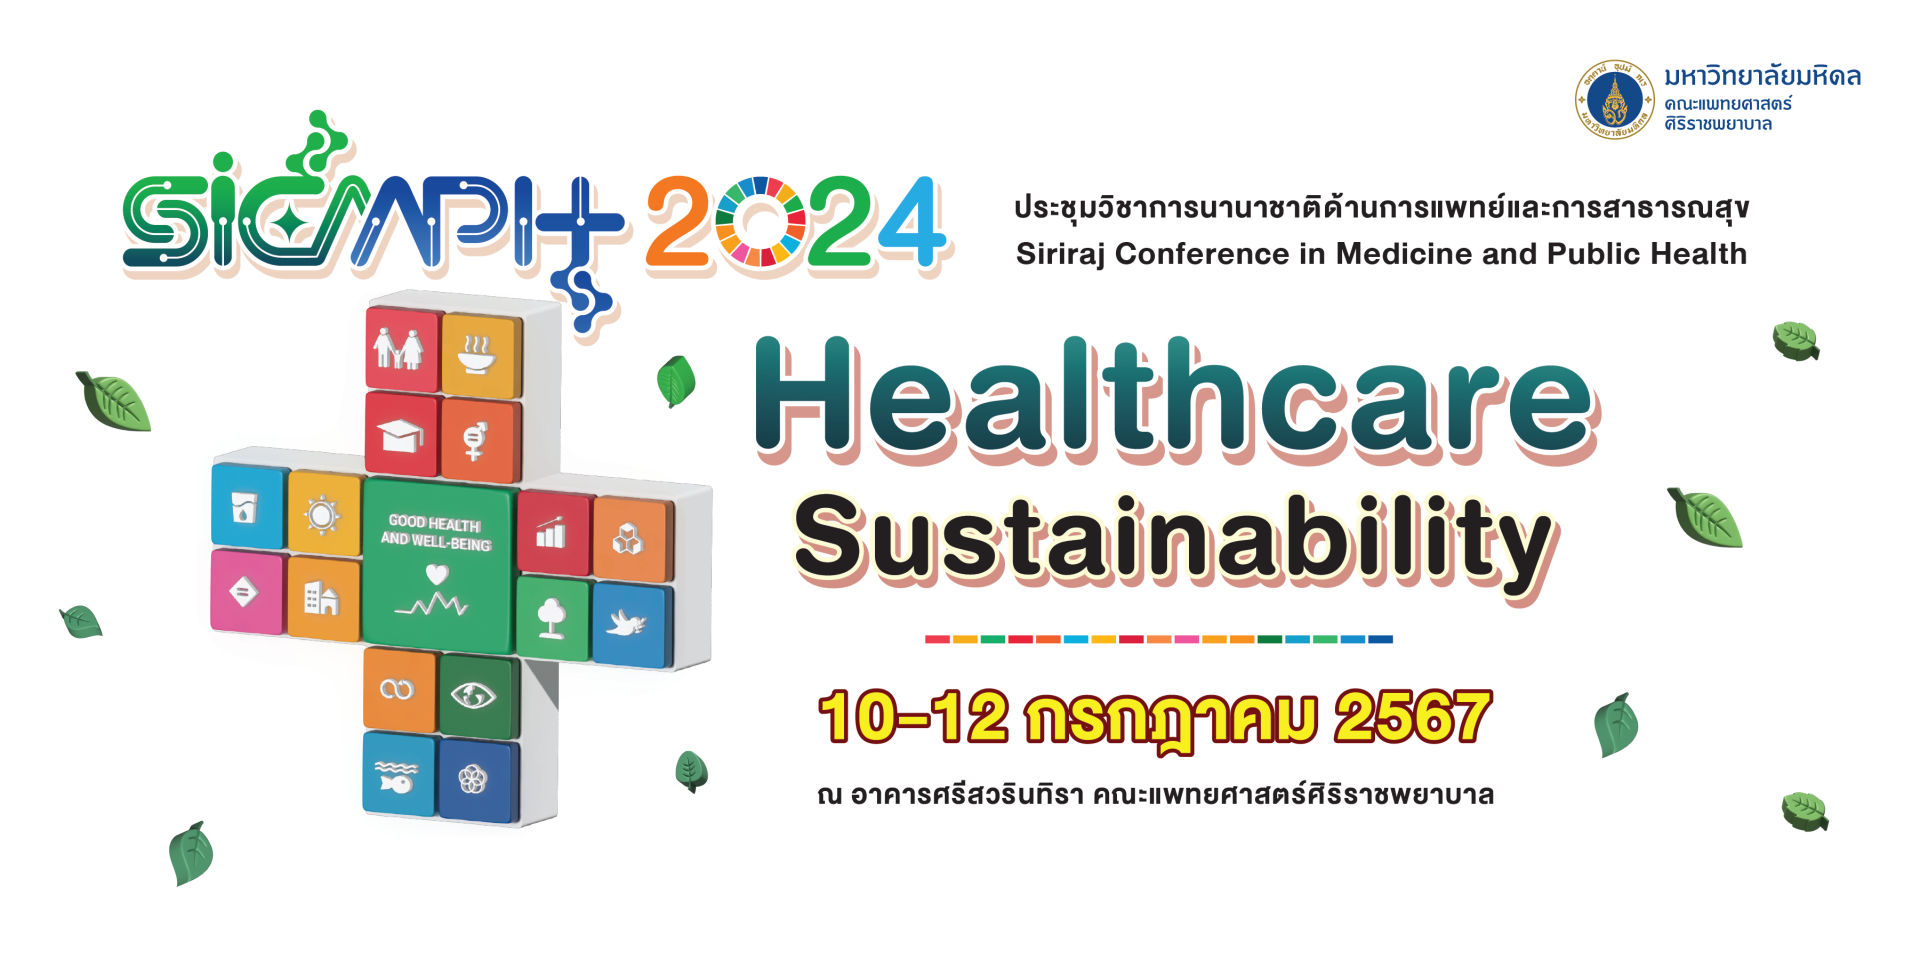 Siriraj Conference in Medicine and Public Health 2024 (SiCMPH)